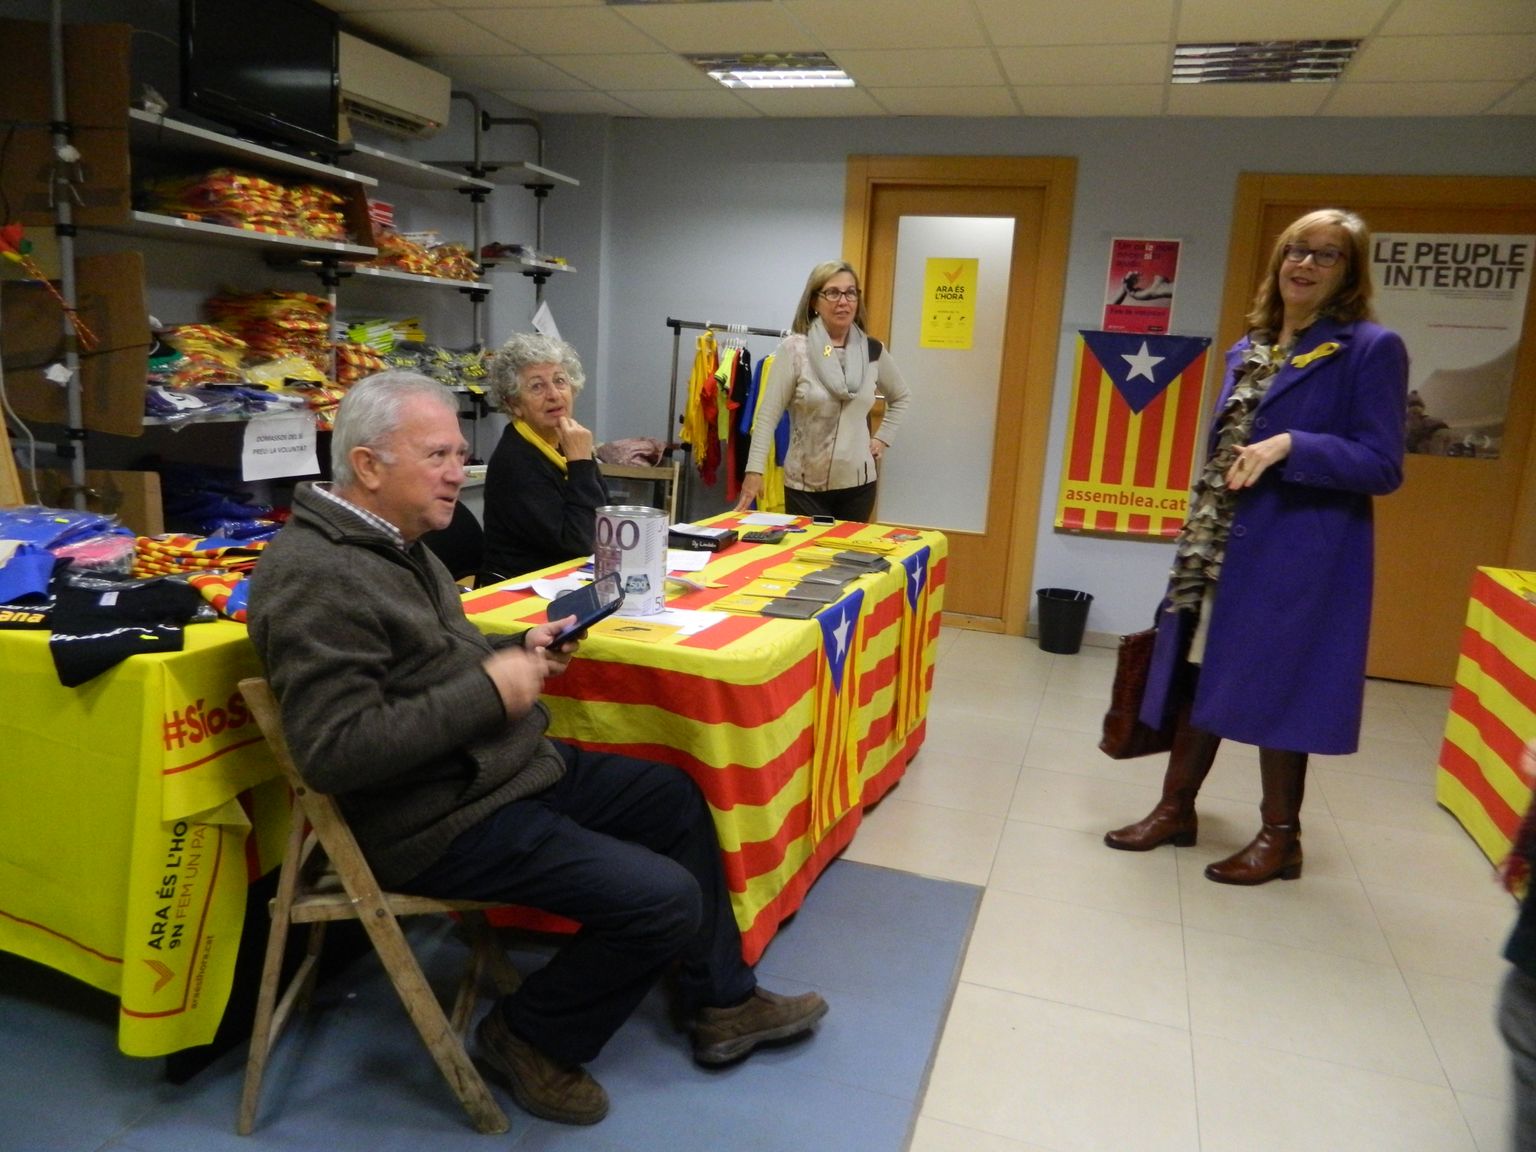 Kella 18 ajal õhtul keeb elu Katalaani Rahvusassamblee Tarragona kontoris. Miquel Suriñach on pildil vasak- ja Filomena Perpinyà parempoolseim.